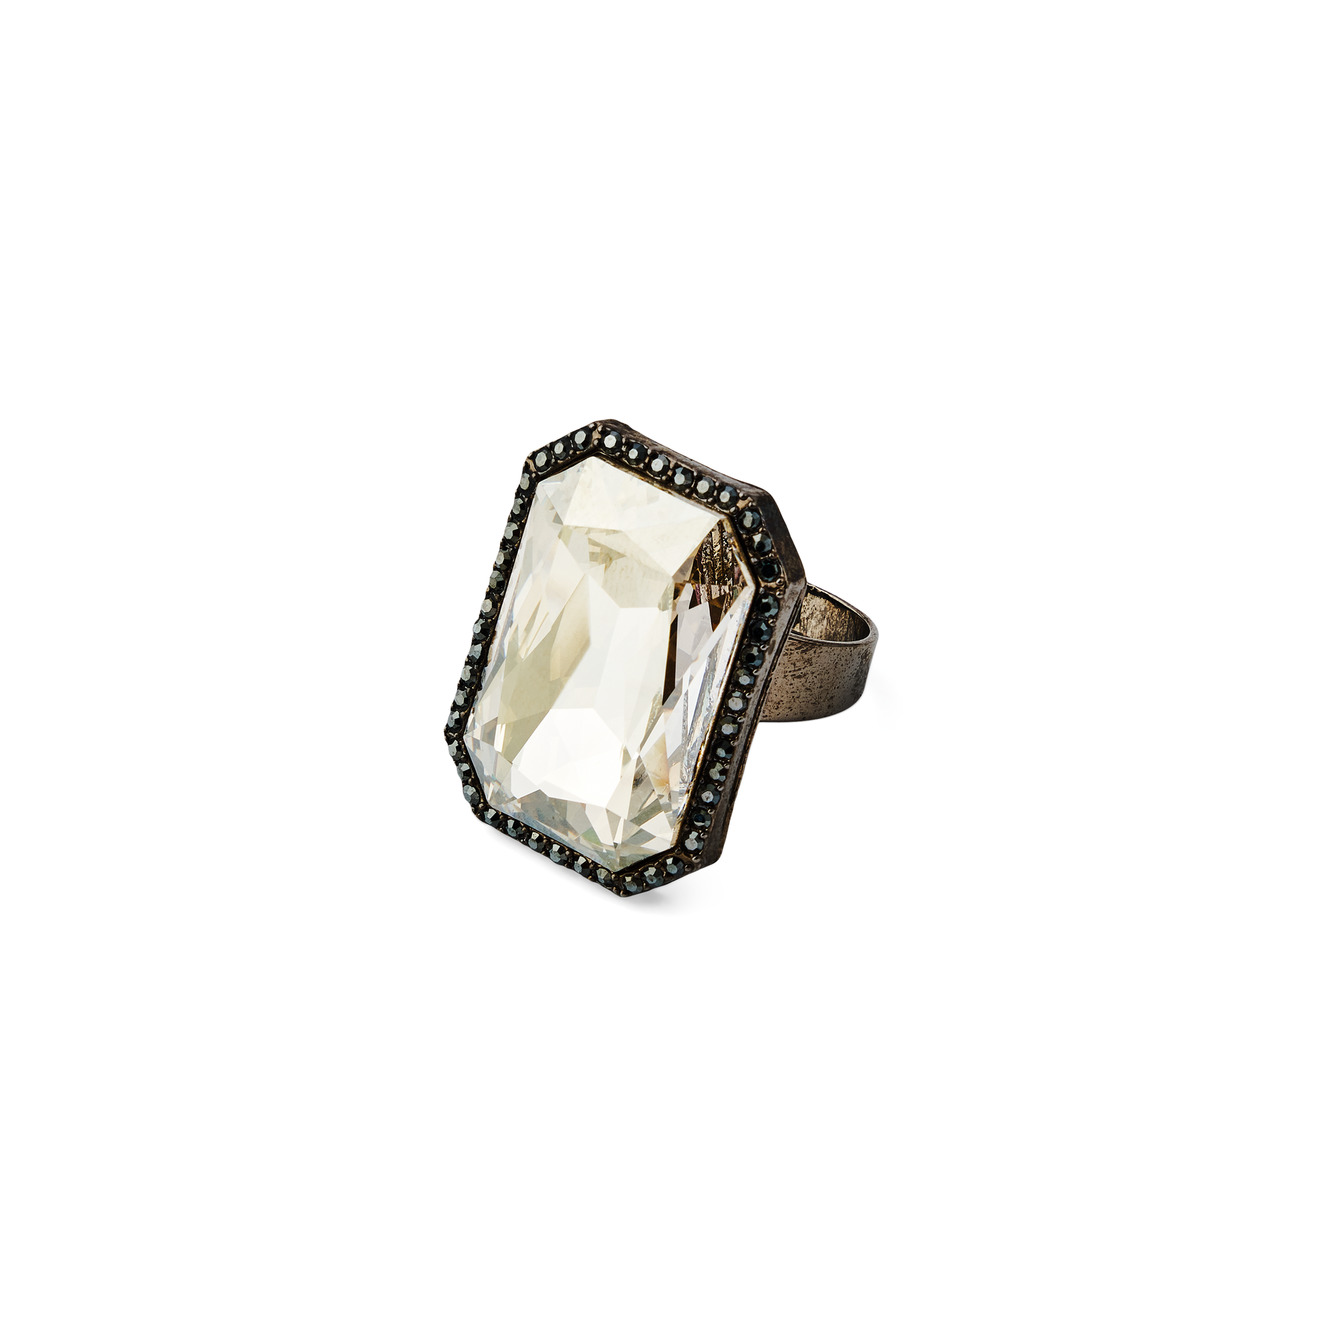 Herald Percy Кольцо с крупным коньячным кристаллом с паве из черных кристаллов herald percy золотистое широкое кольцо с кристаллом